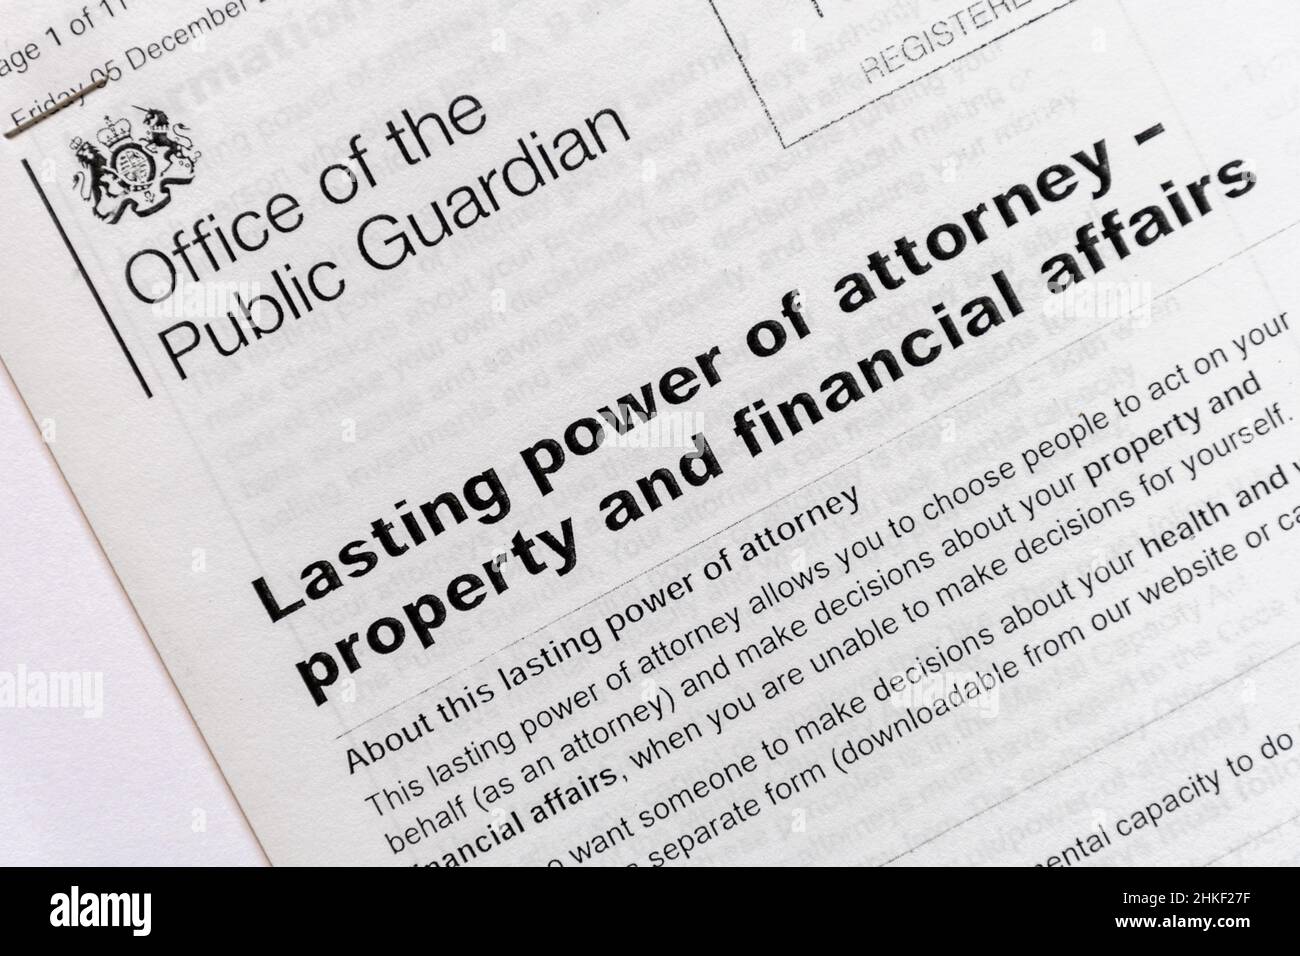 Documento del potere d'avvocato permanente (LPA) - Proprietà e affari finanziari, rilasciato dall'Ufficio del Guardiano pubblico, Inghilterra, Regno Unito Foto Stock